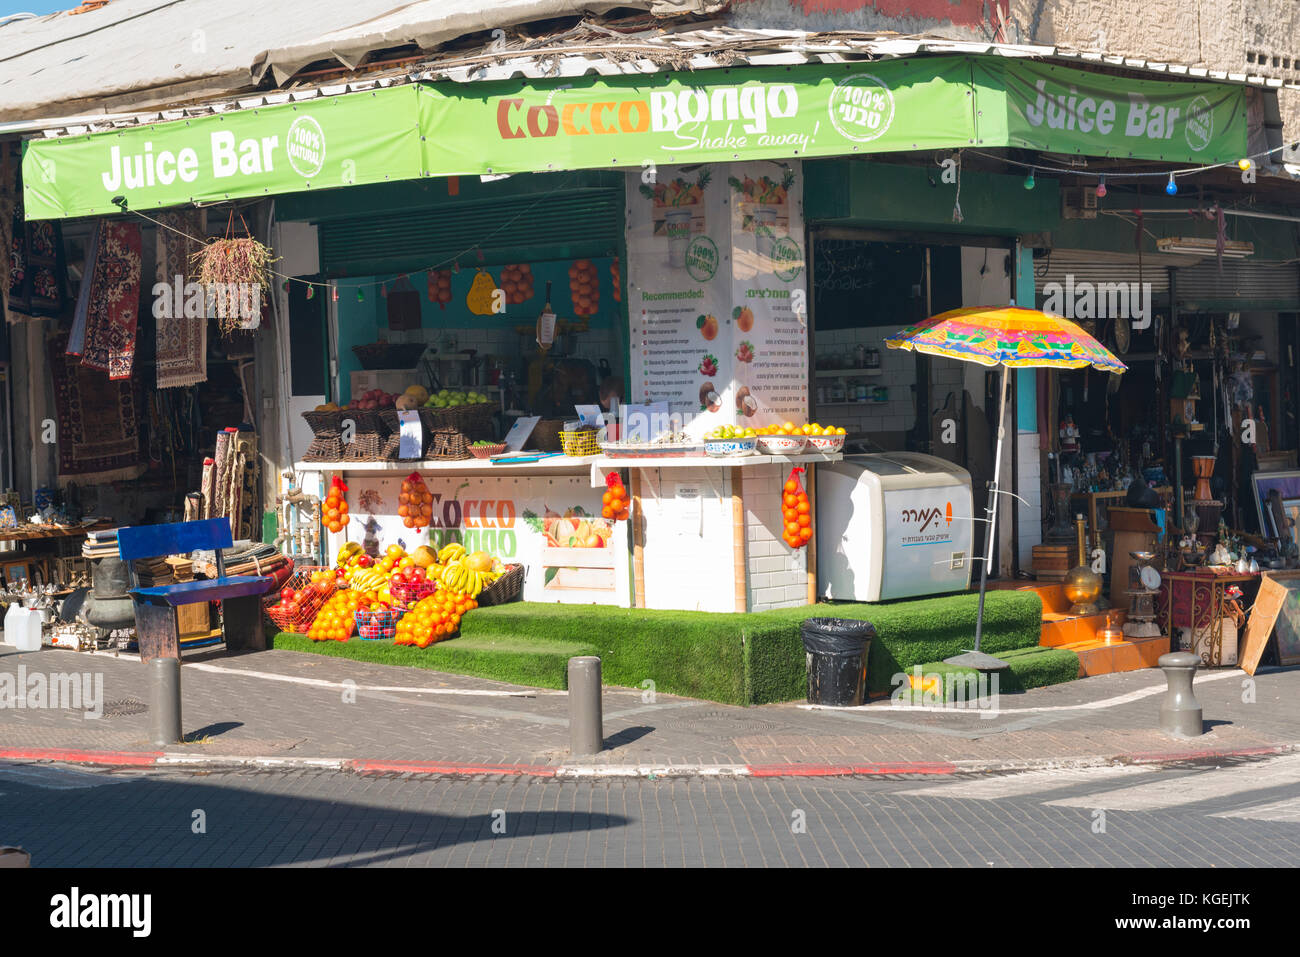 Israel das Heilige Land Tel Aviv Jaffa Jaffa Cocco Bongo Saftbar Schütteln Sie frisches Obst kühlschrank Sonnenschirm Straße Ecke orangen Bananen Granatäpfel Stockfoto